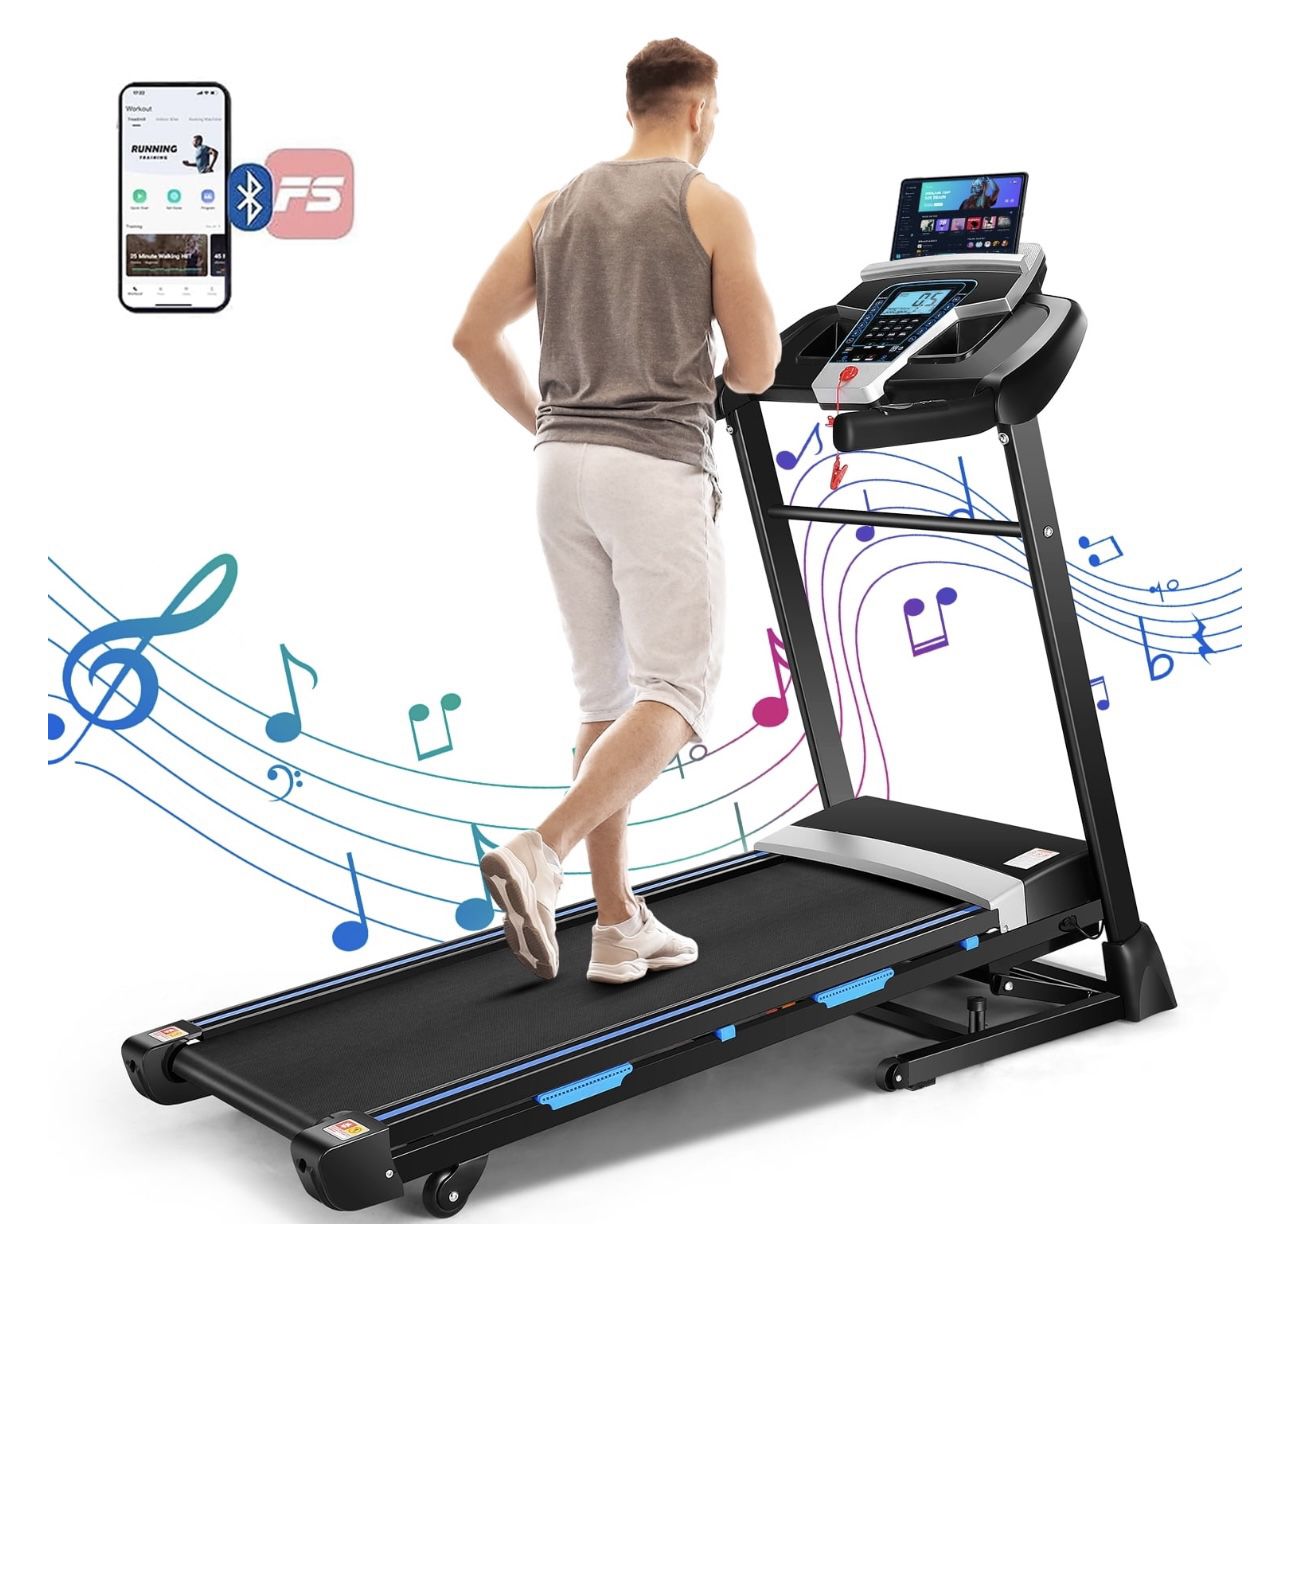 Treadmill 300 lb Capacity, 3.25 HP 